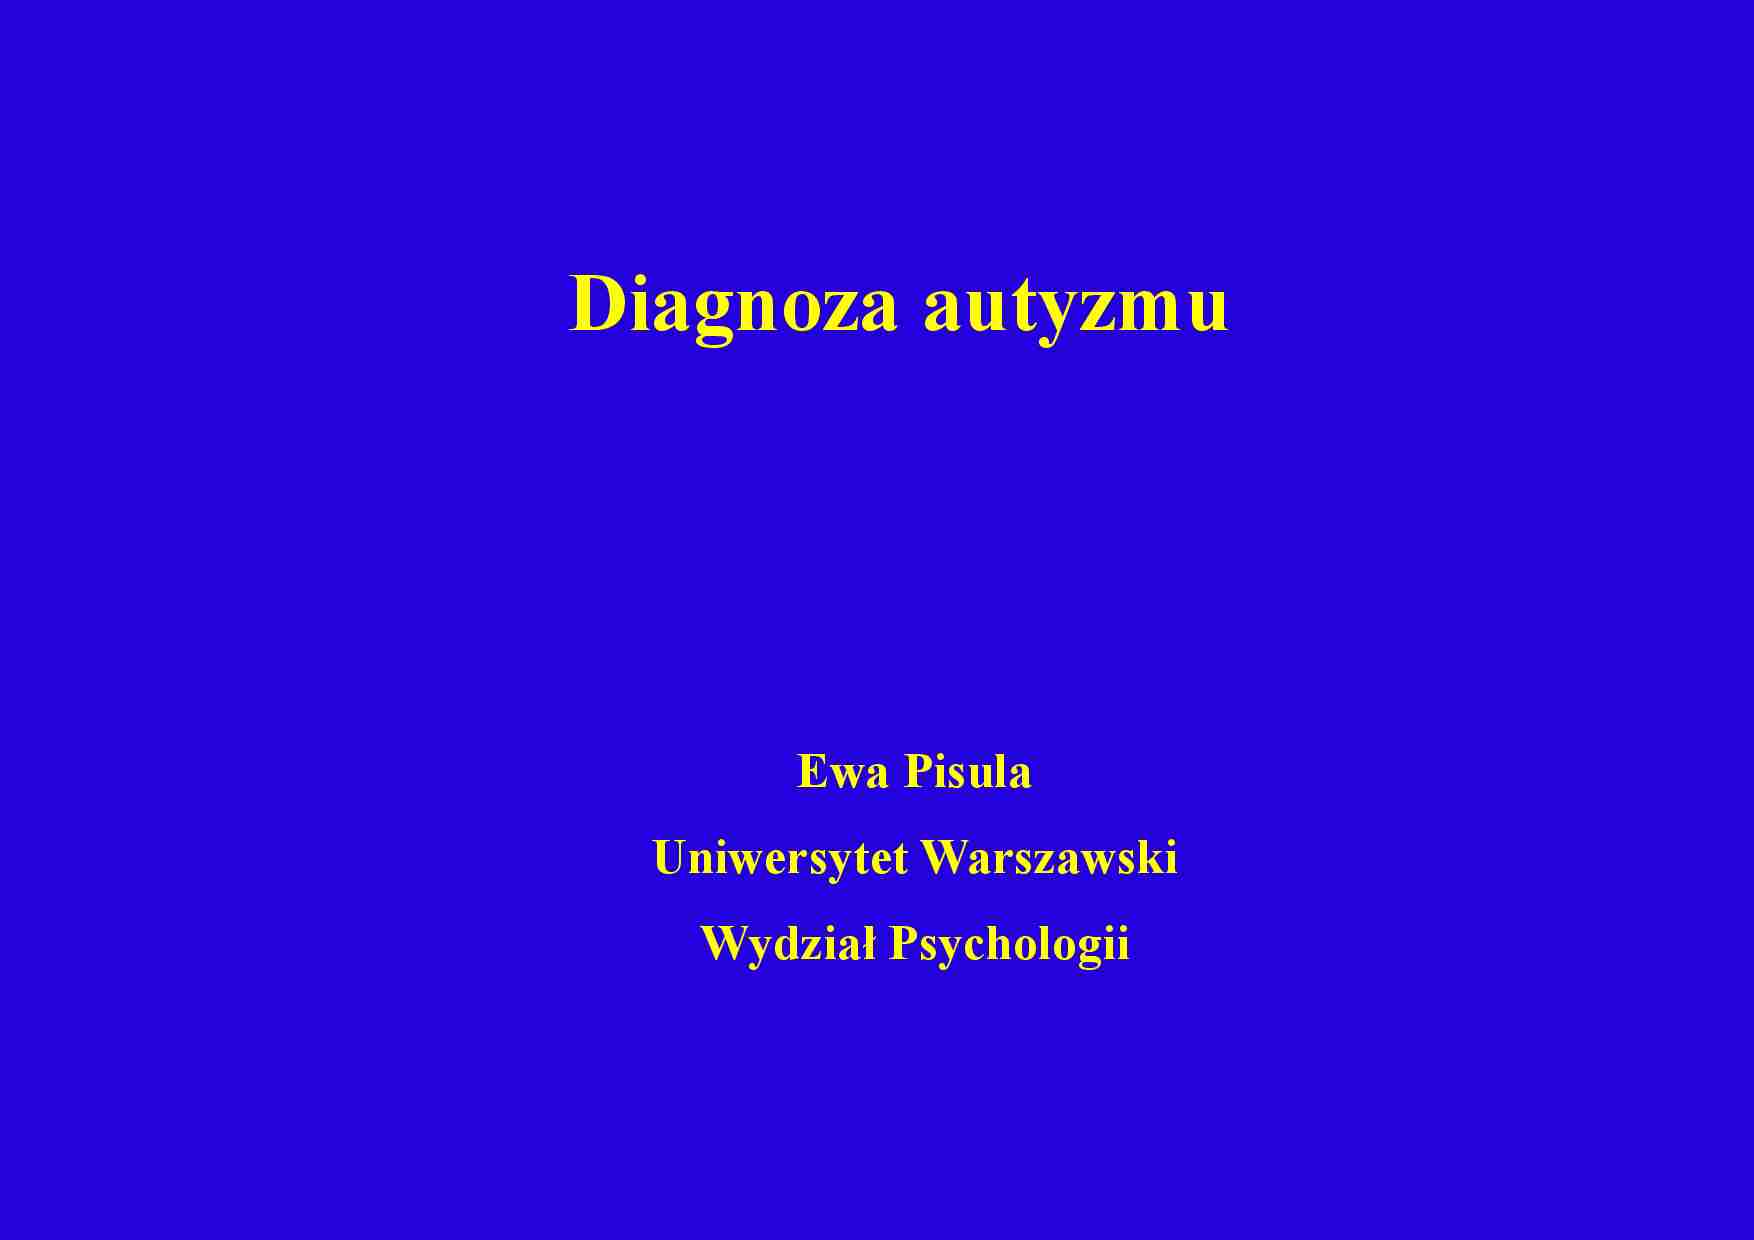 Diagnoza autyzmu - wykład - strona 1